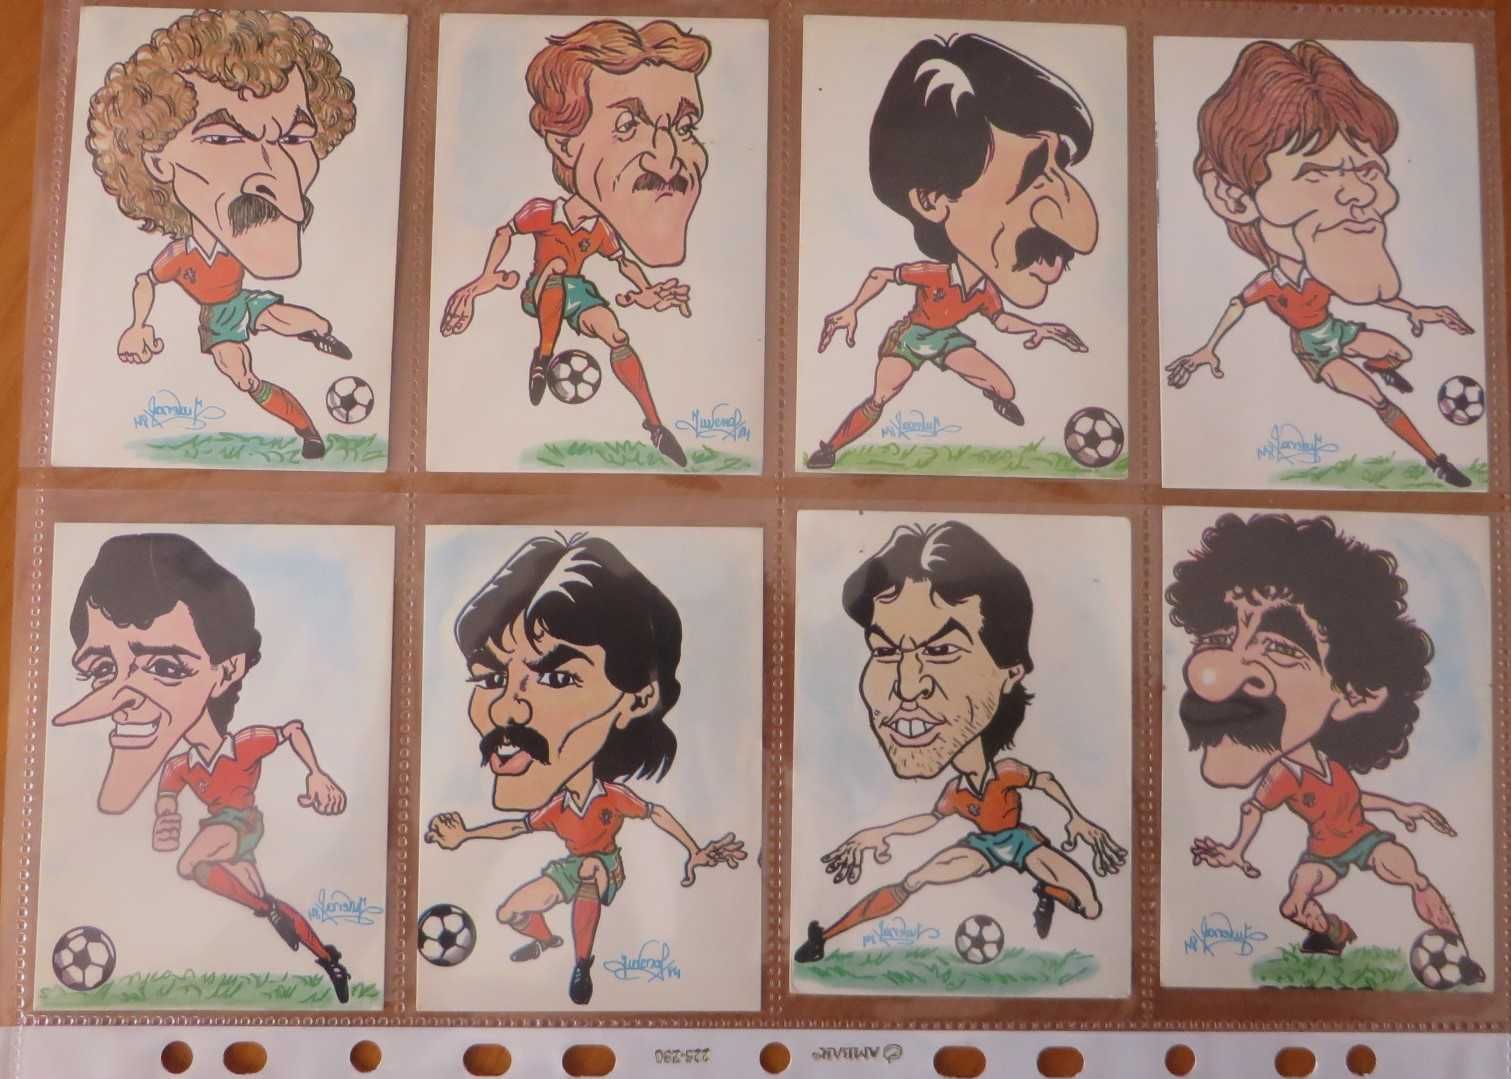 Calendários coleção, Futebol Caricaturas 1984